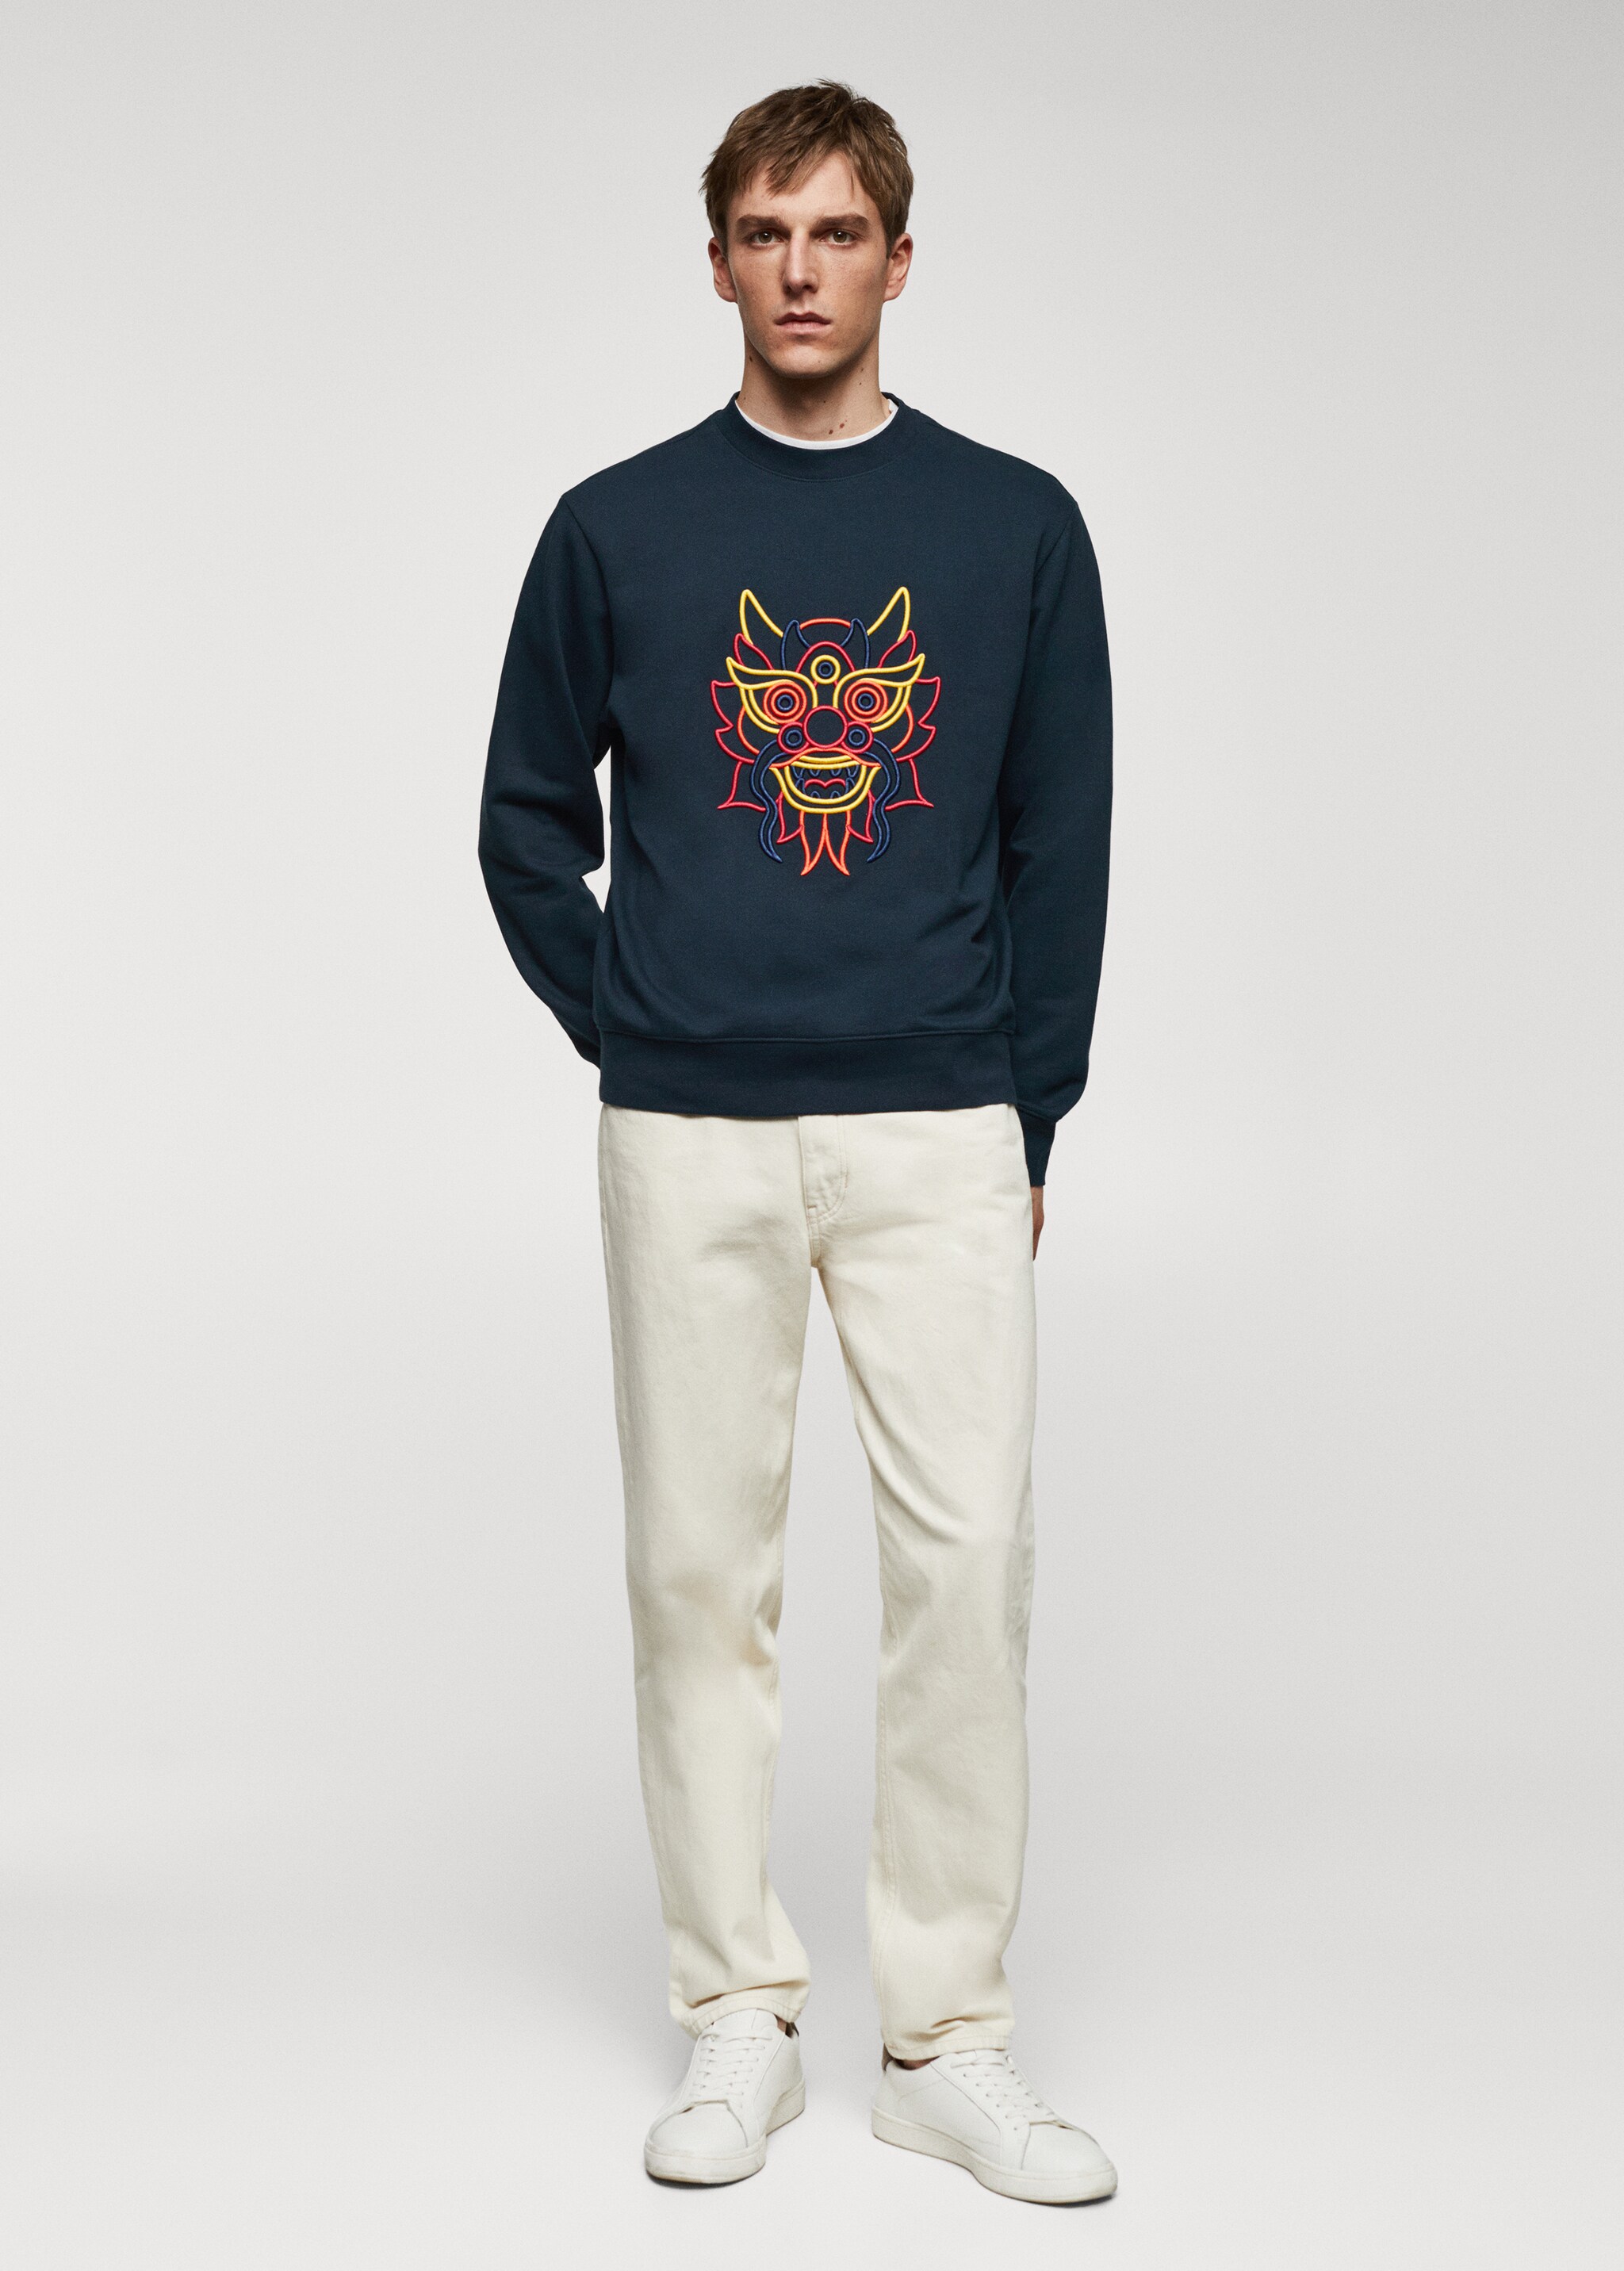 100% cotton sweatshirt embroidered detail - General plane